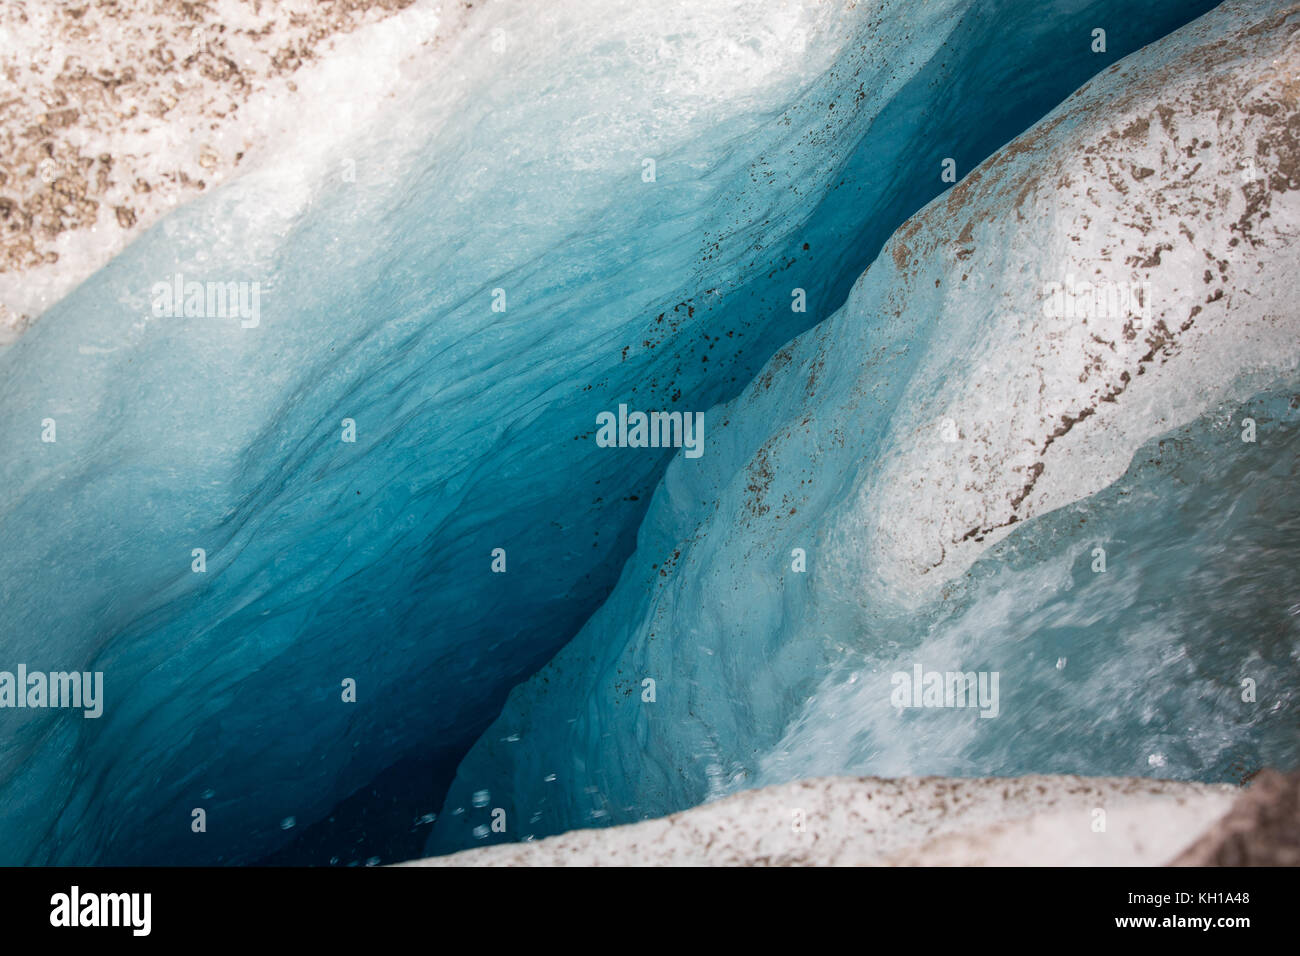 Grand Glacier d'Aletsch, en Suisse : Détail d'une fissure ou crevasse bleu profond dans un glacier. Banque D'Images